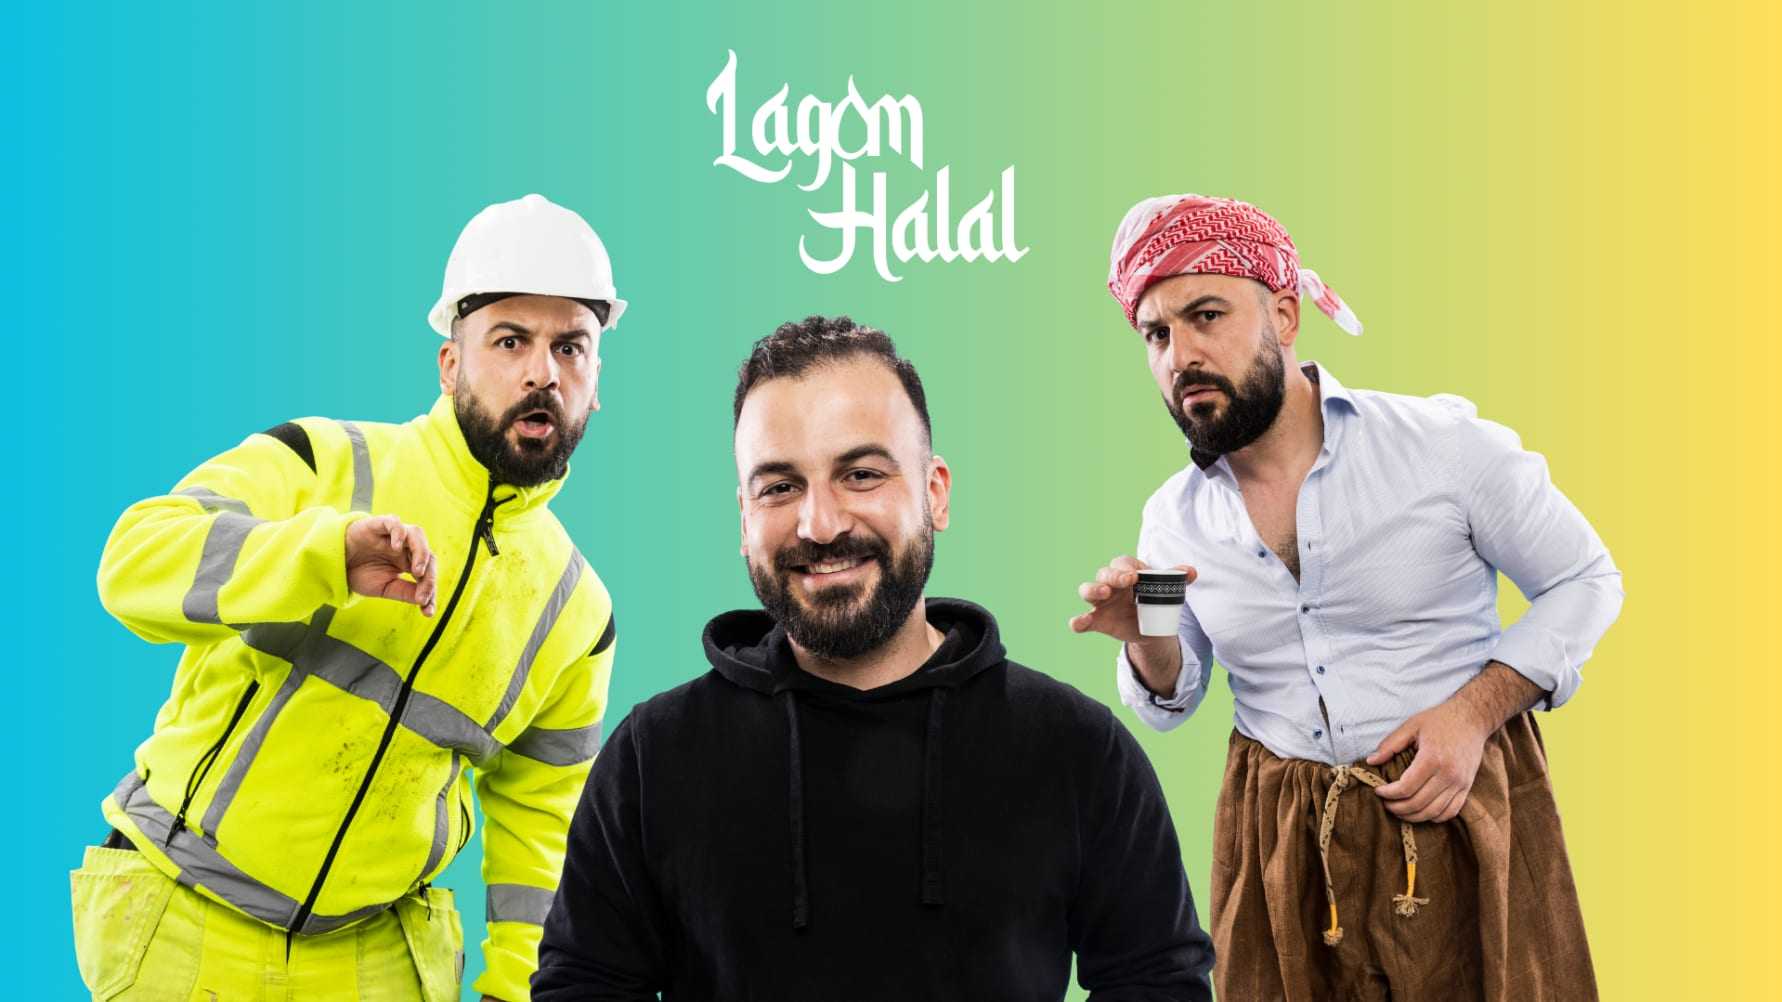 Med över en halv miljon följare i sociala medier – Diyari på vårturné med humorshowen Lagom Halal